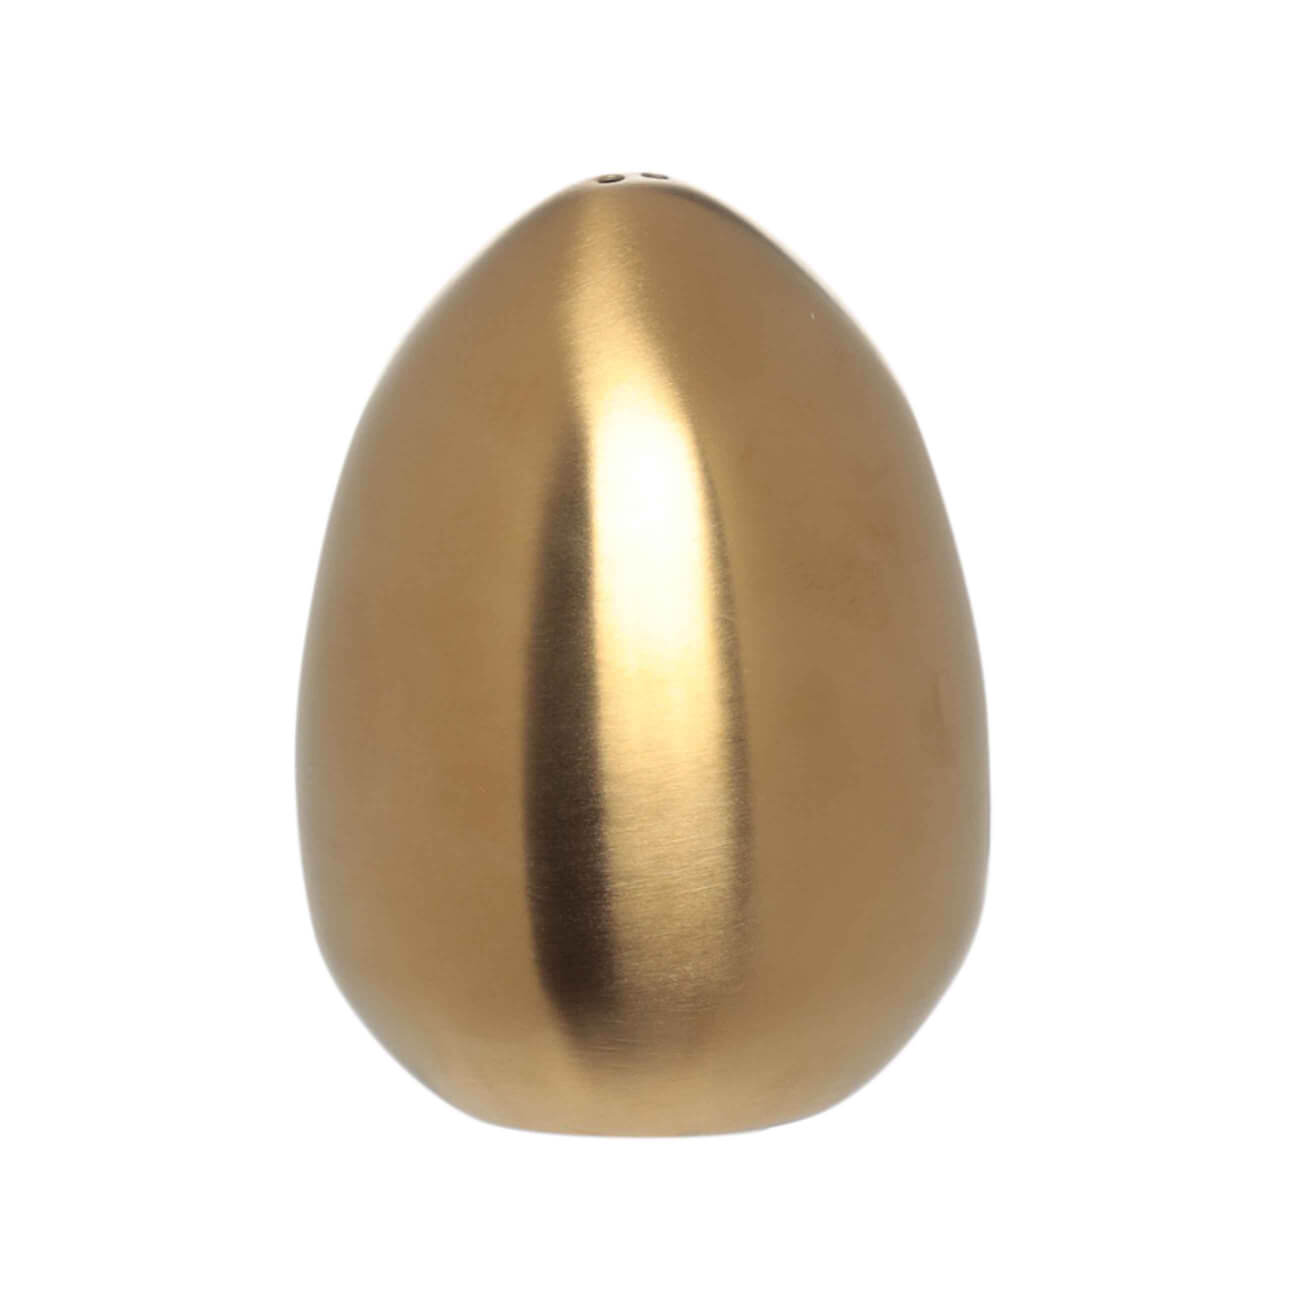 Емкость для соли или перца, 7 см, сталь, золотистая, Яйцо, Classic gold изображение № 1